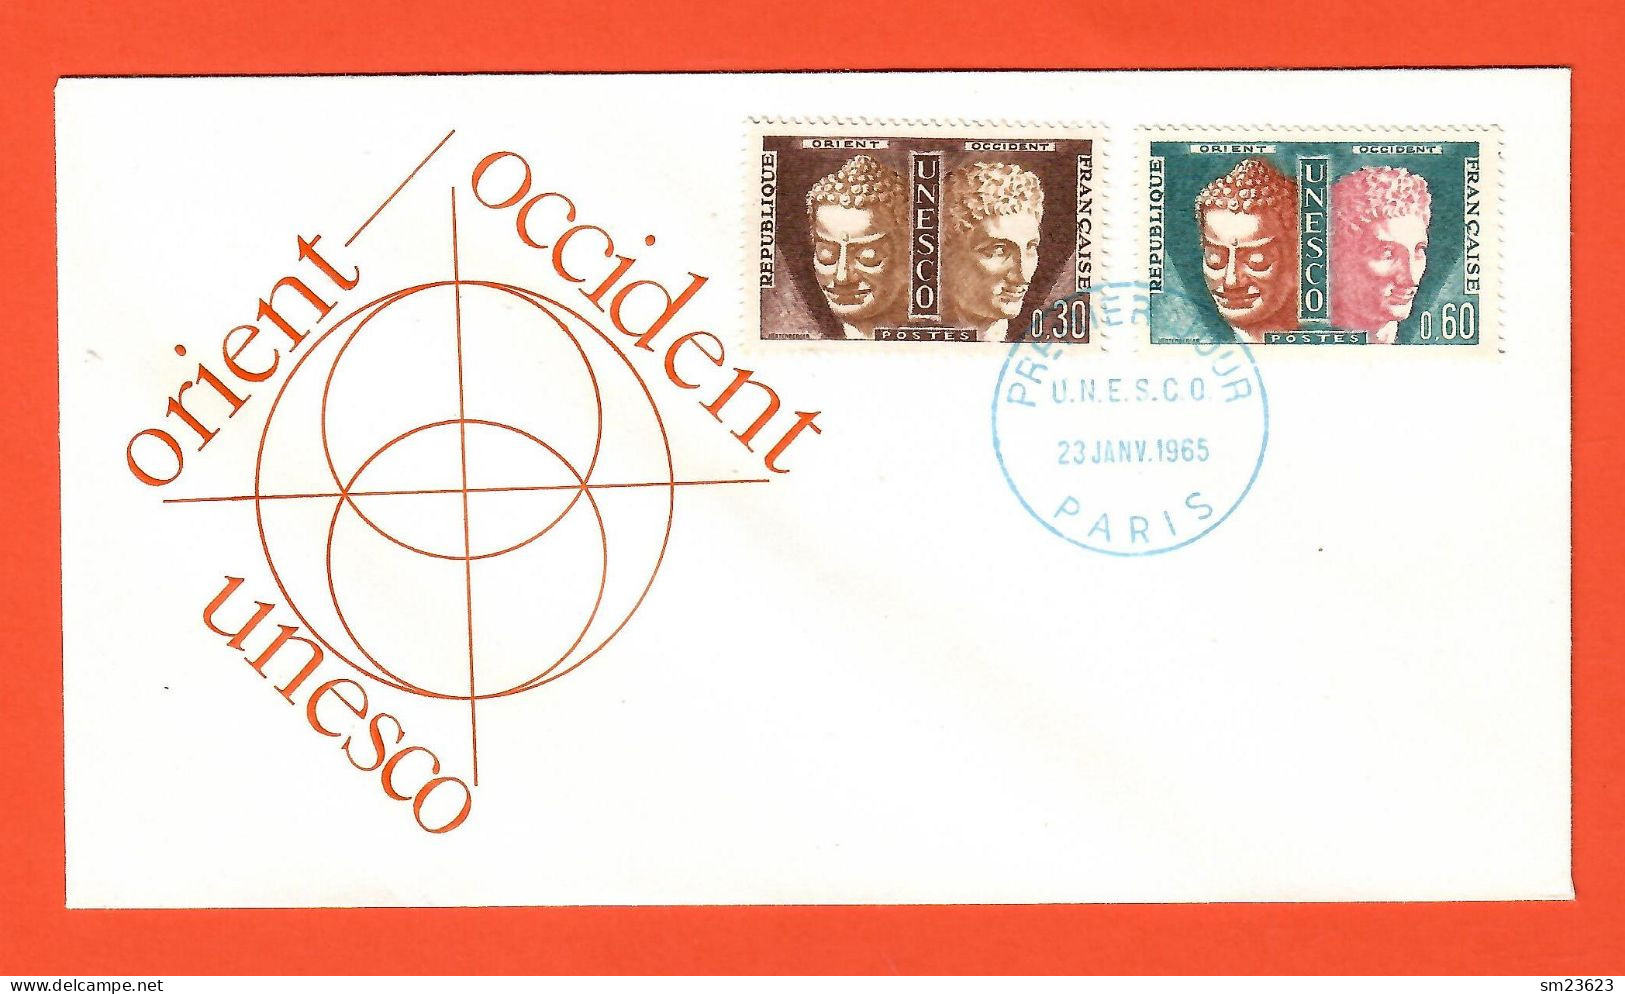 Frankreich 1965   Mi.Nr. 4+5 , Dienstmarken Für Die UNESCO - FDC Premier Jour 23. JANV.1965 PARIS - Storia Postale